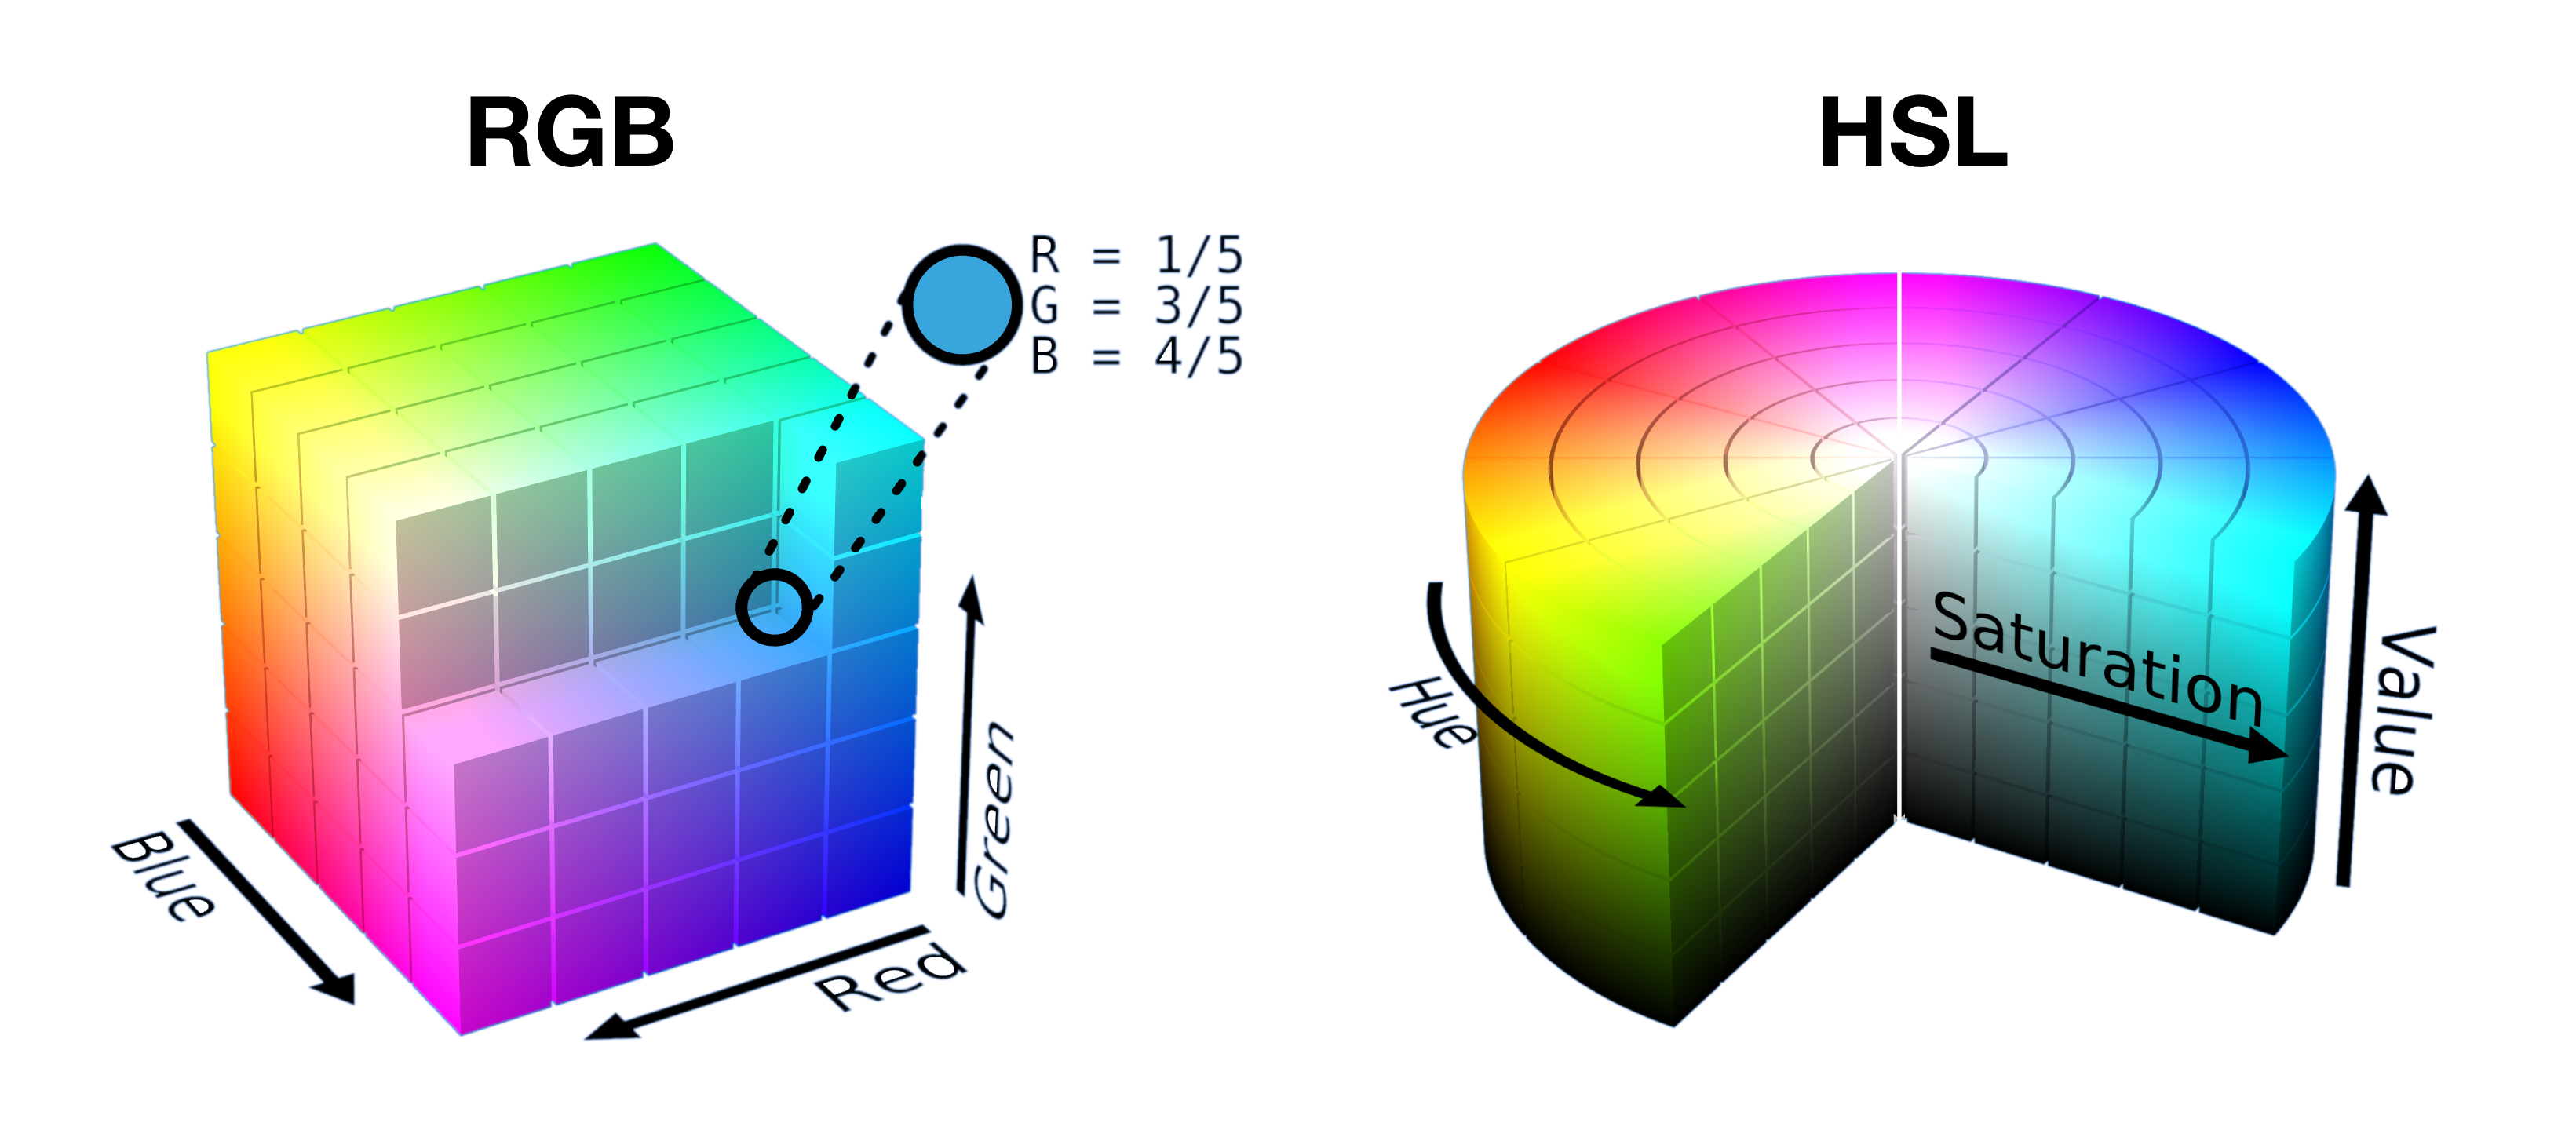 Наполовину разрезанный куб RGB и фрагменты цилиндра HSL показаны рядом, чтобы показать, как цвета упакованы в форму в каждом пространстве.